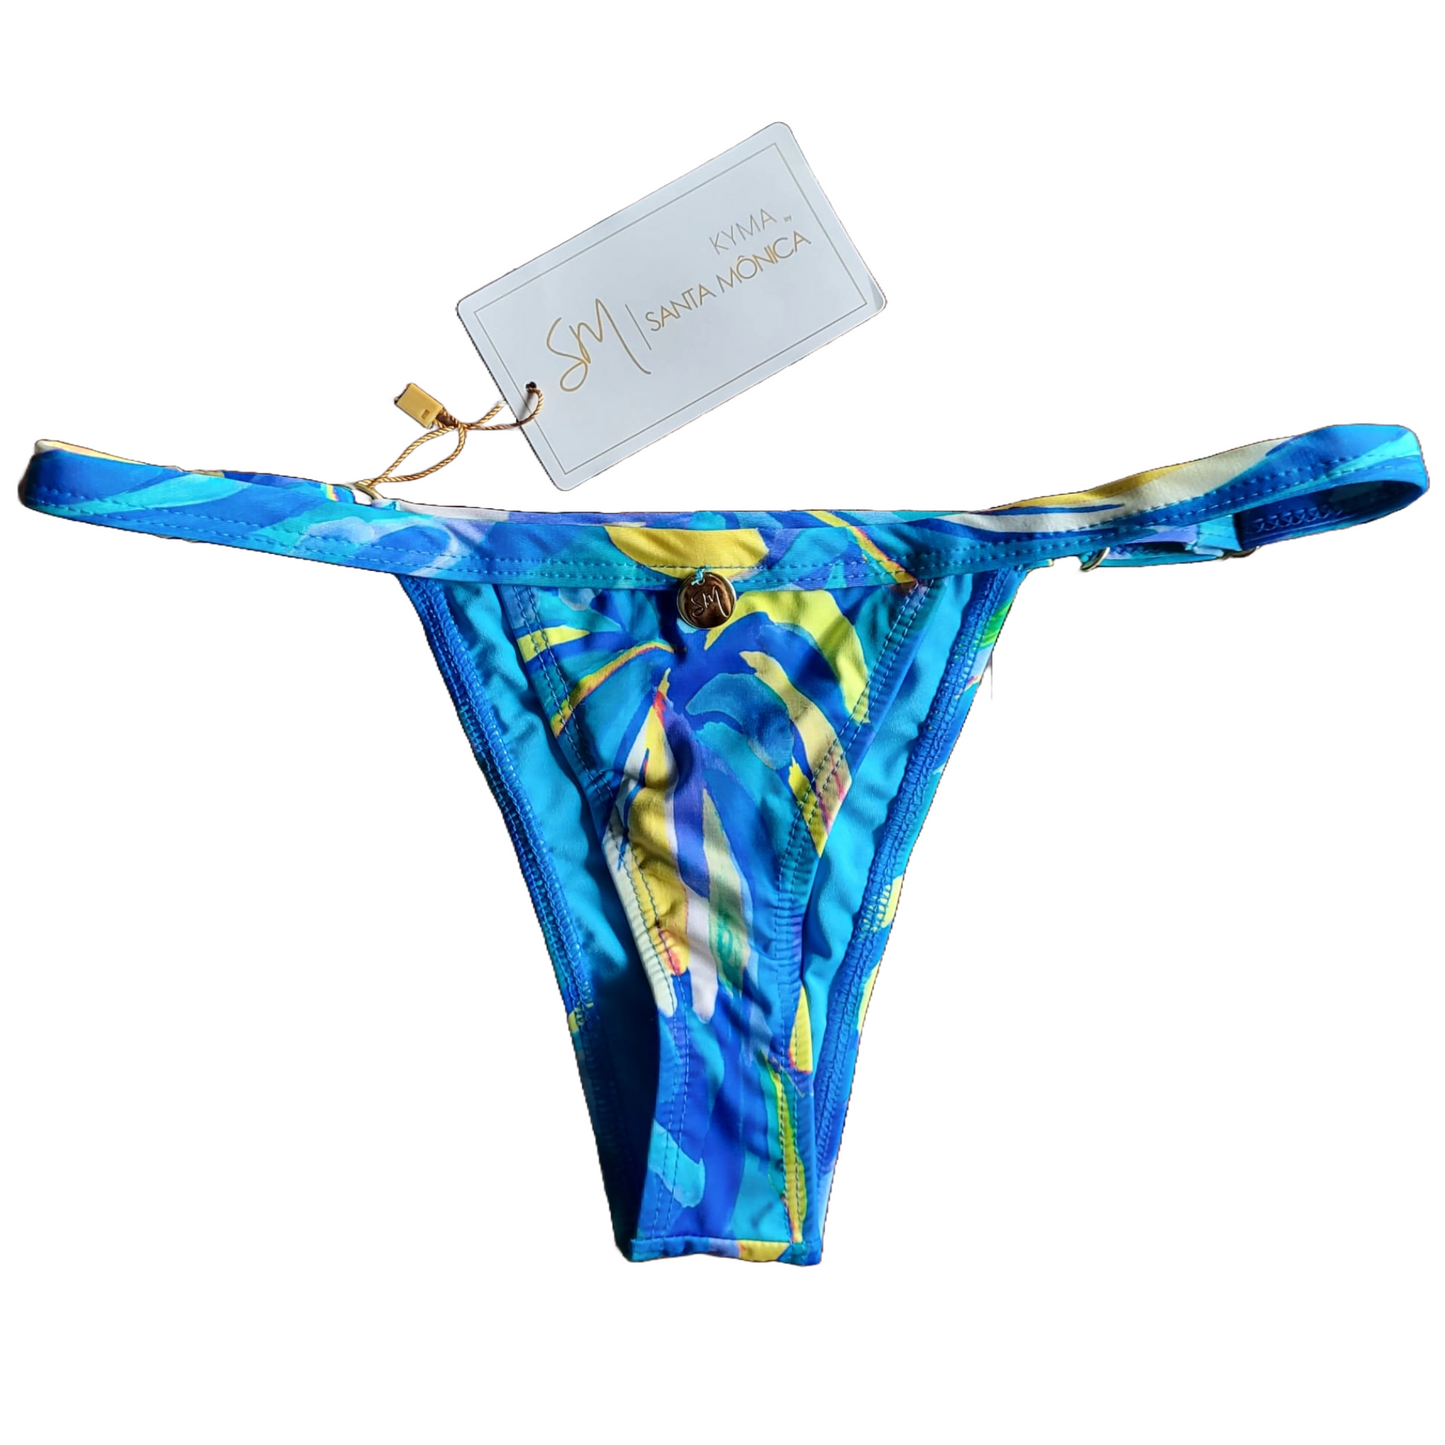 Miami thong bikini bottom